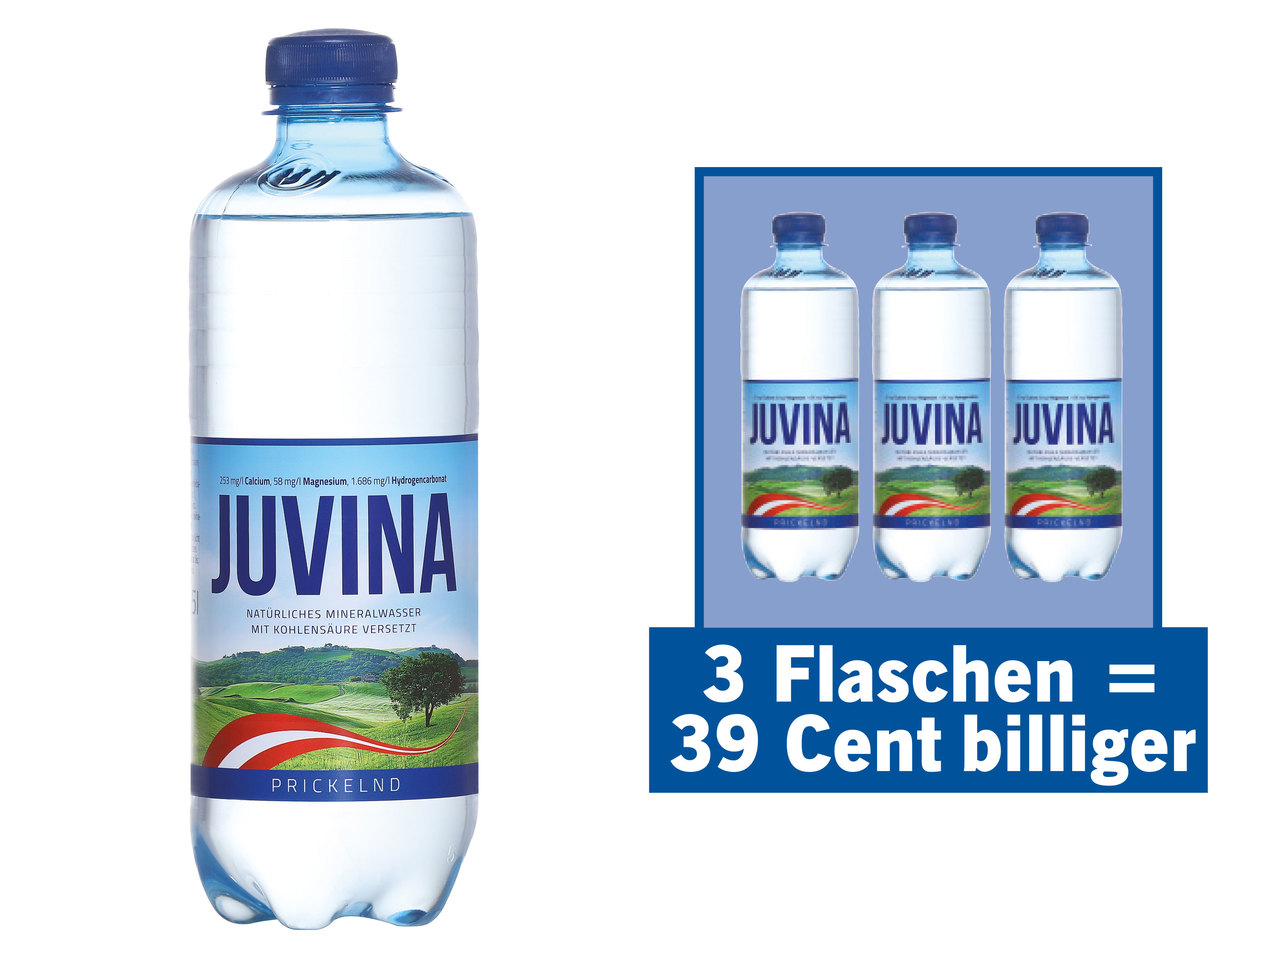 JUVINA Mineralwasser Prickelnd